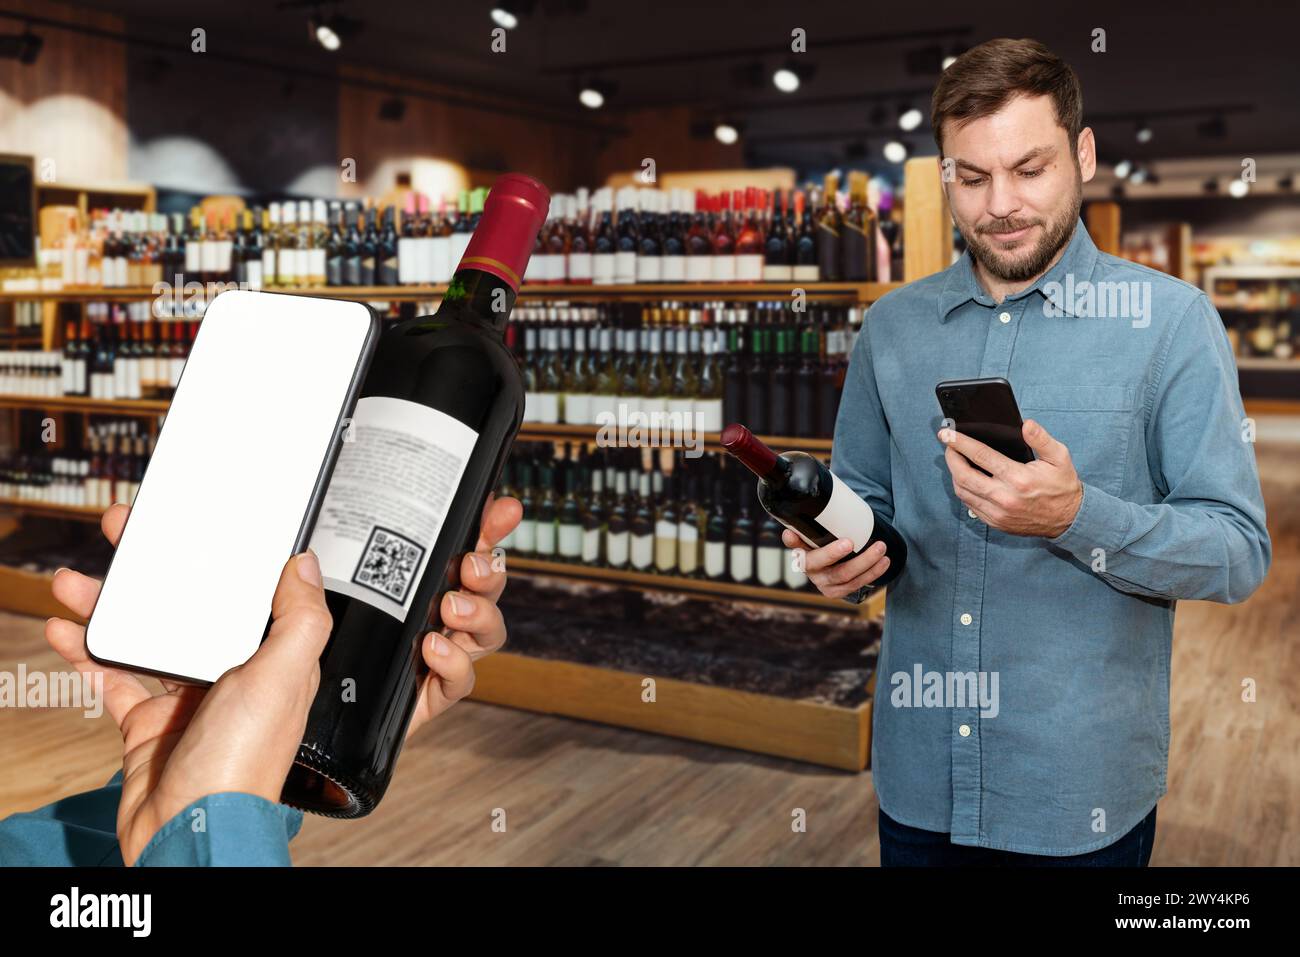 Les clients d'un magasin de vin scannent l'étiquette électronique des bouteilles de vin et lisent des informations sur le vin à l'aide de leur téléphone portable. Banque D'Images